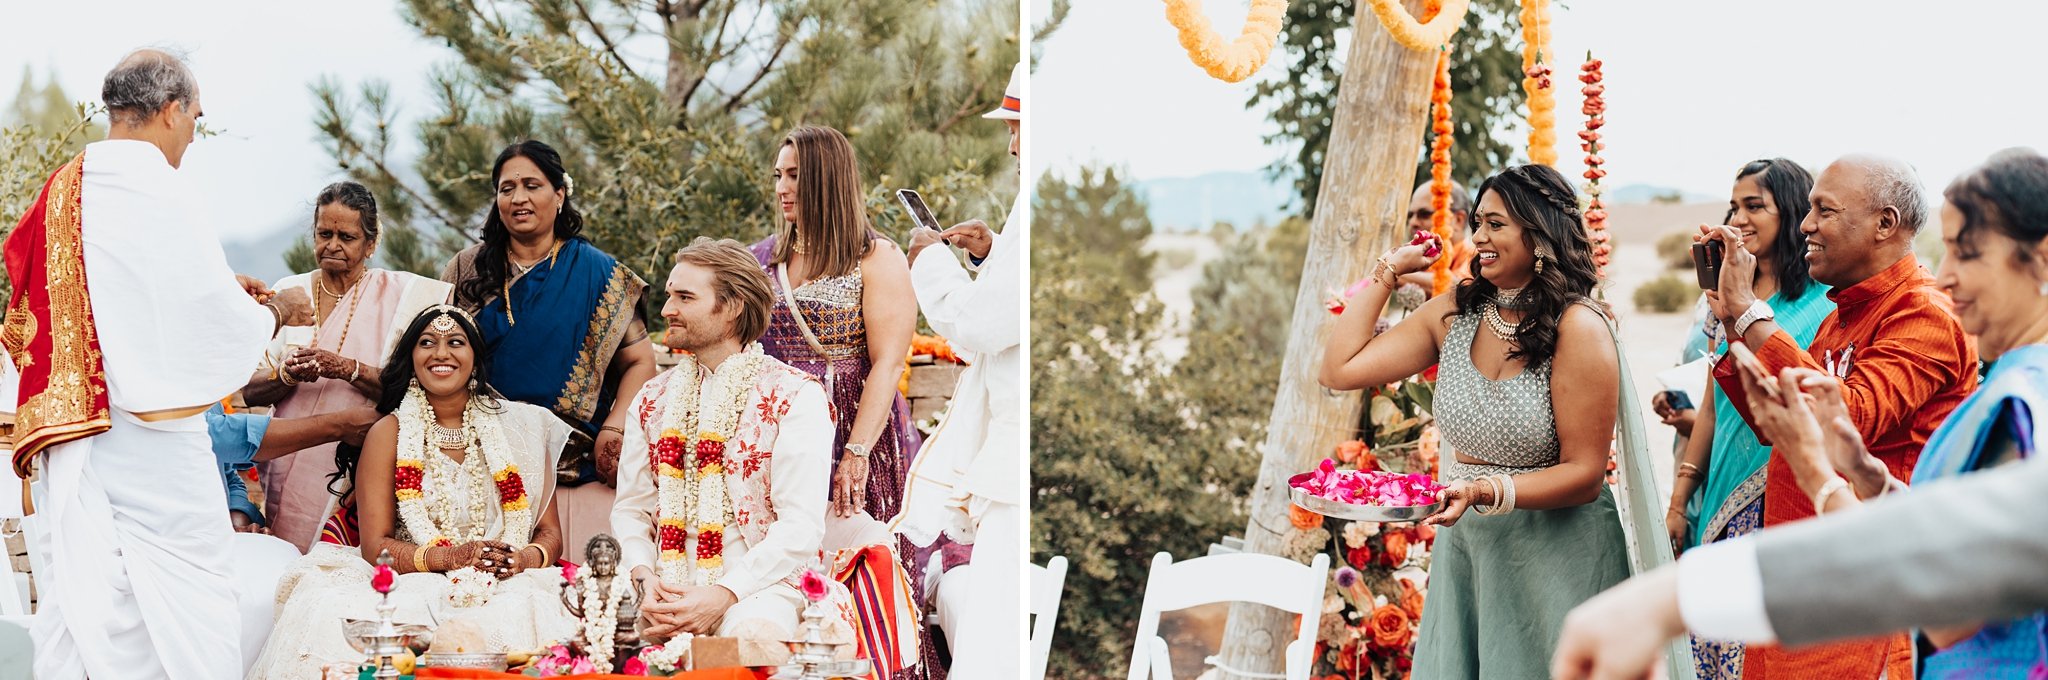 Alicia+lucia+photography+-+albuquerque+wedding+photographer+-+santa+fe+wedding+photography+-+new+mexico+wedding+photographer+-+new+mexico+wedding+-+hindu+wedding+-+indian +wedding+-+destination+wedding_0040.jpg